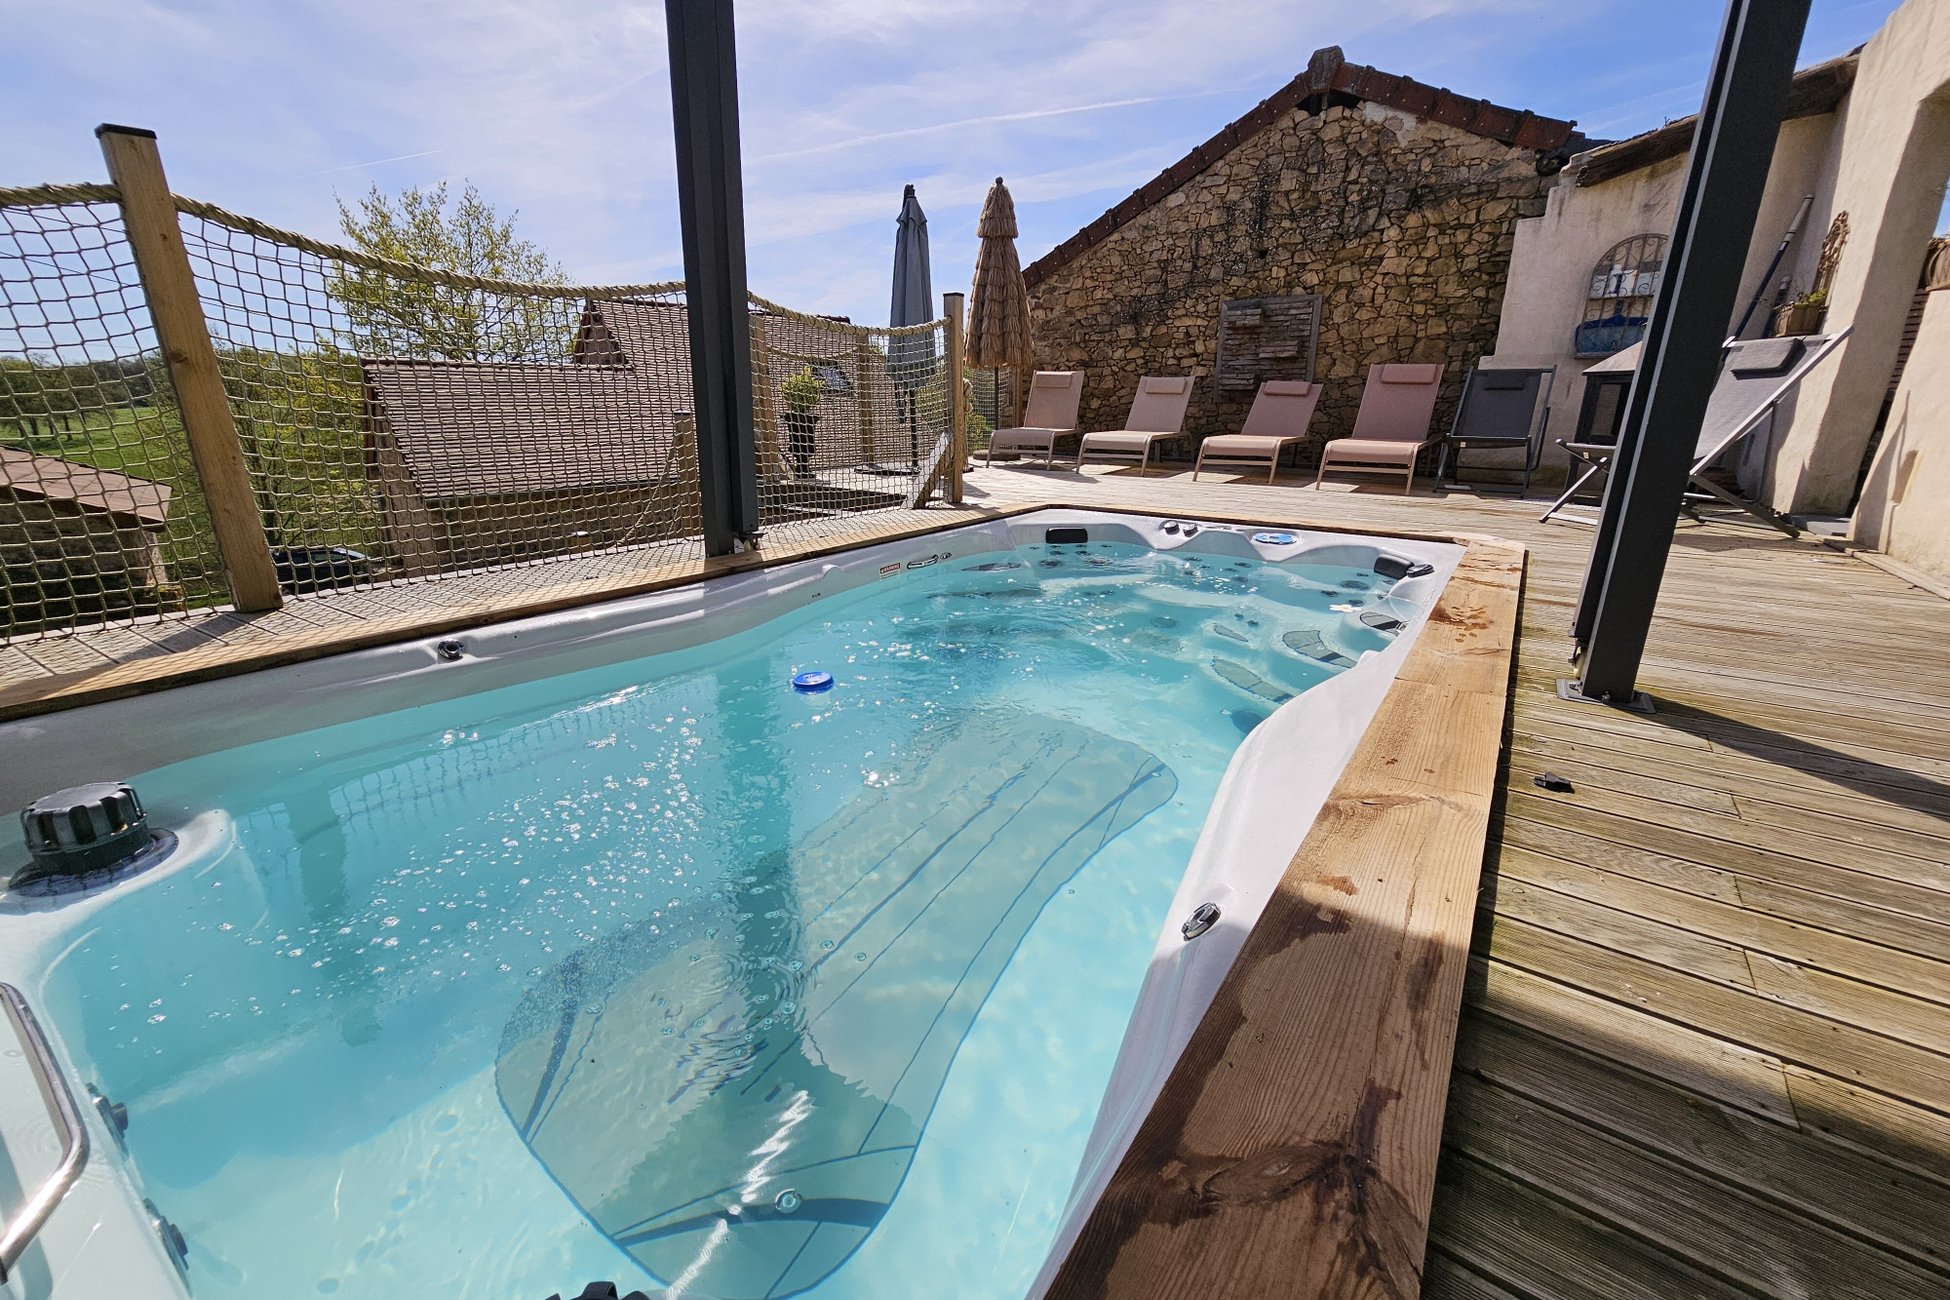 Hébergement UnicStay : Les 3 Clefs de GaYa - Spa de nage, Sauna, lit hydromassant & relaxation immersive - 4pers. à Saint Jean Ligoure